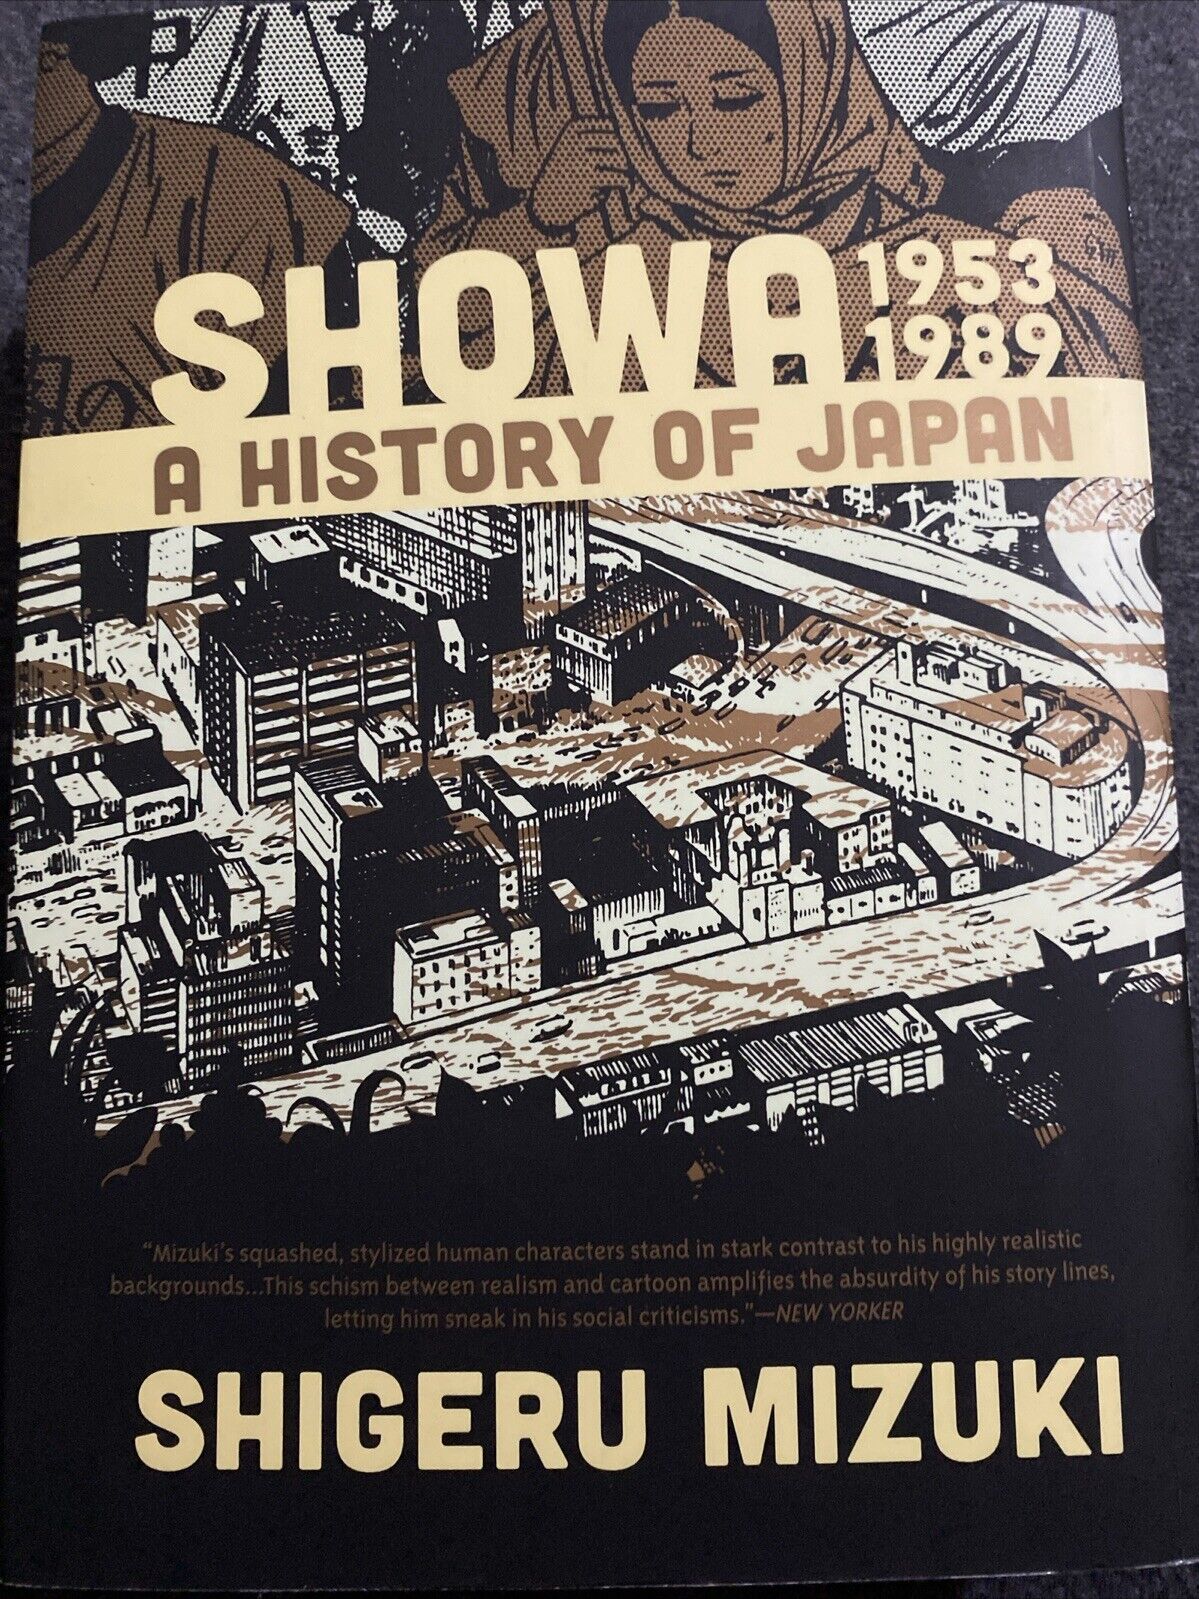 Showa: a History of Japan 1953-1989 by Shigeru Mizuki